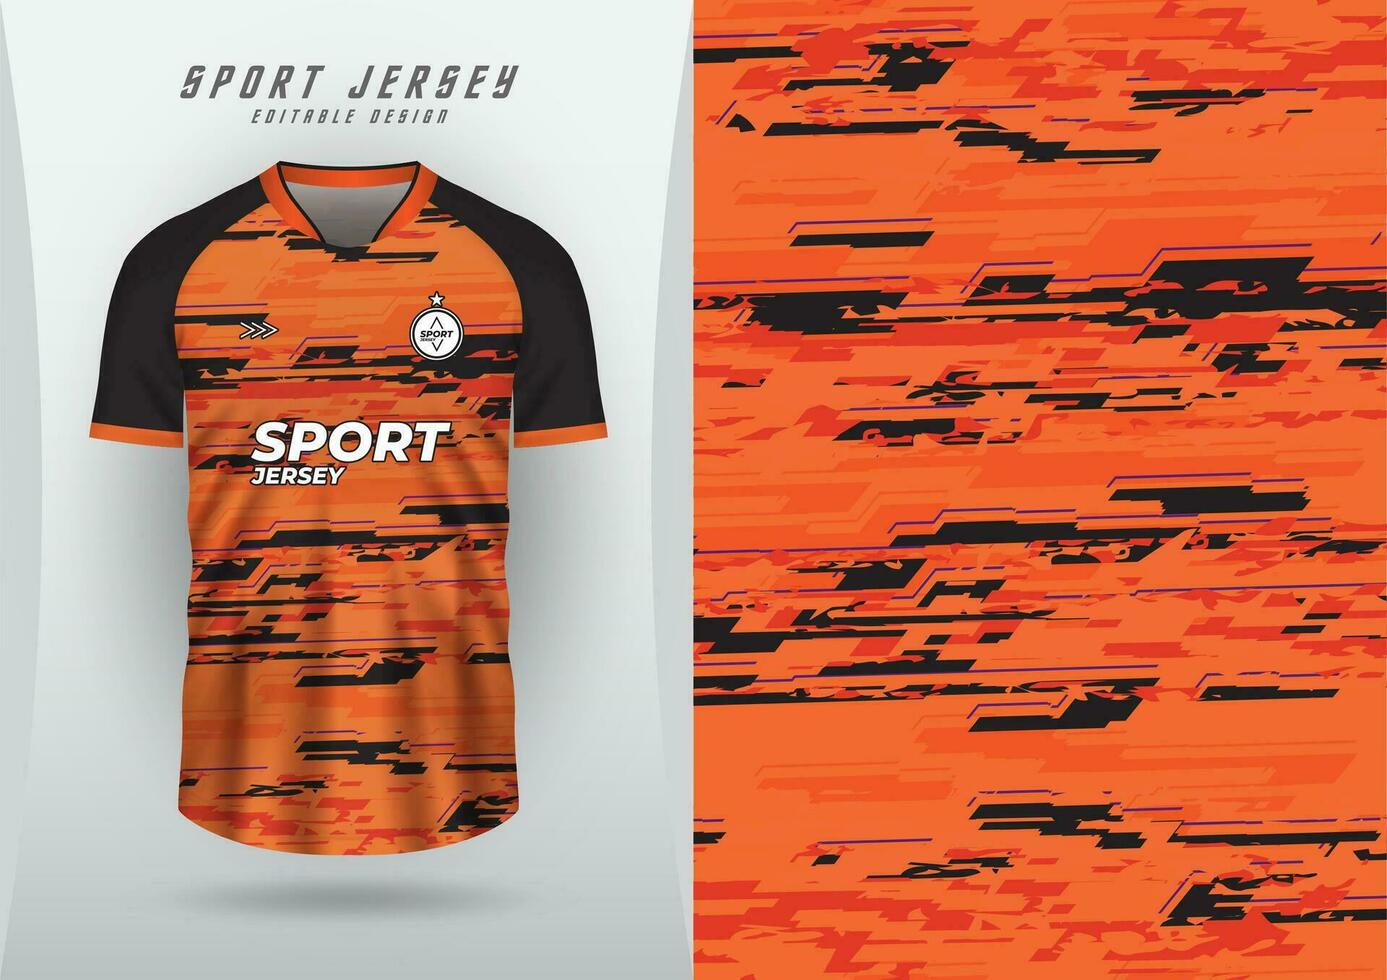 bakgrund för sporter jersey fotboll jersey löpning jersey tävlings jersey mönster orange och svart vektor